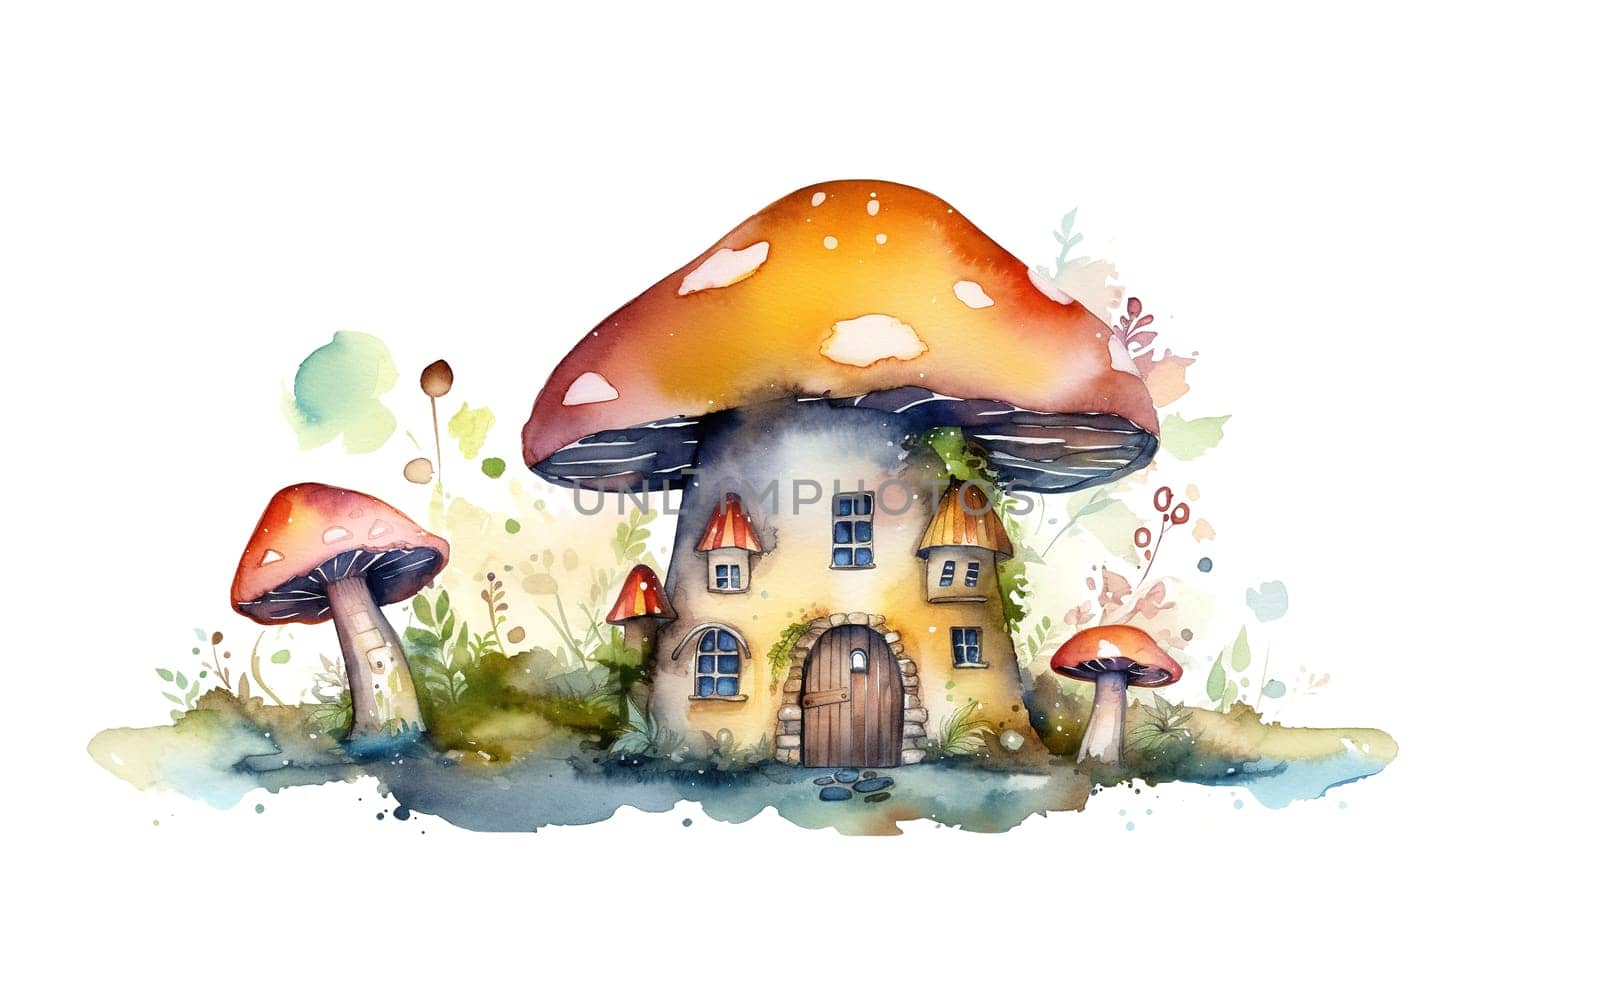 magical fabulous Mushroom House from storytale by GekaSkr